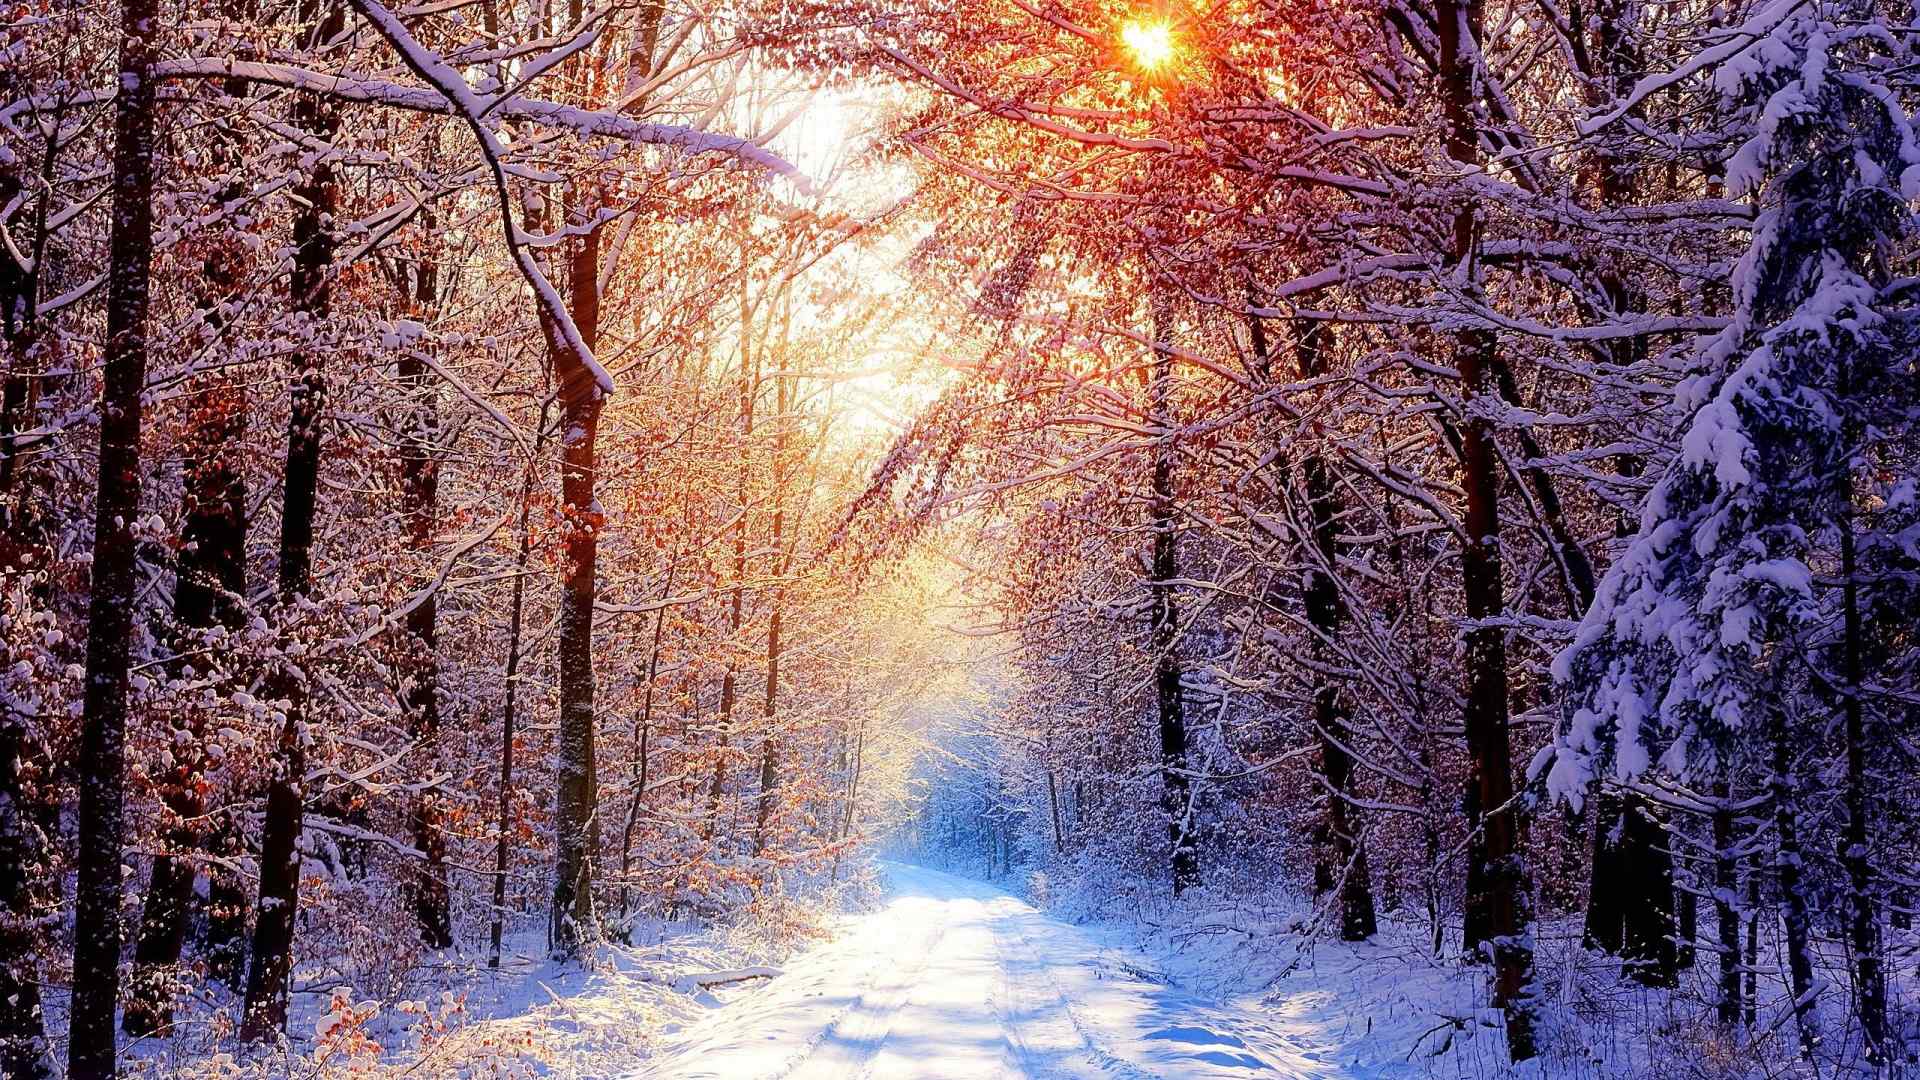 唯美的冬日雪景桌面壁纸图片下载